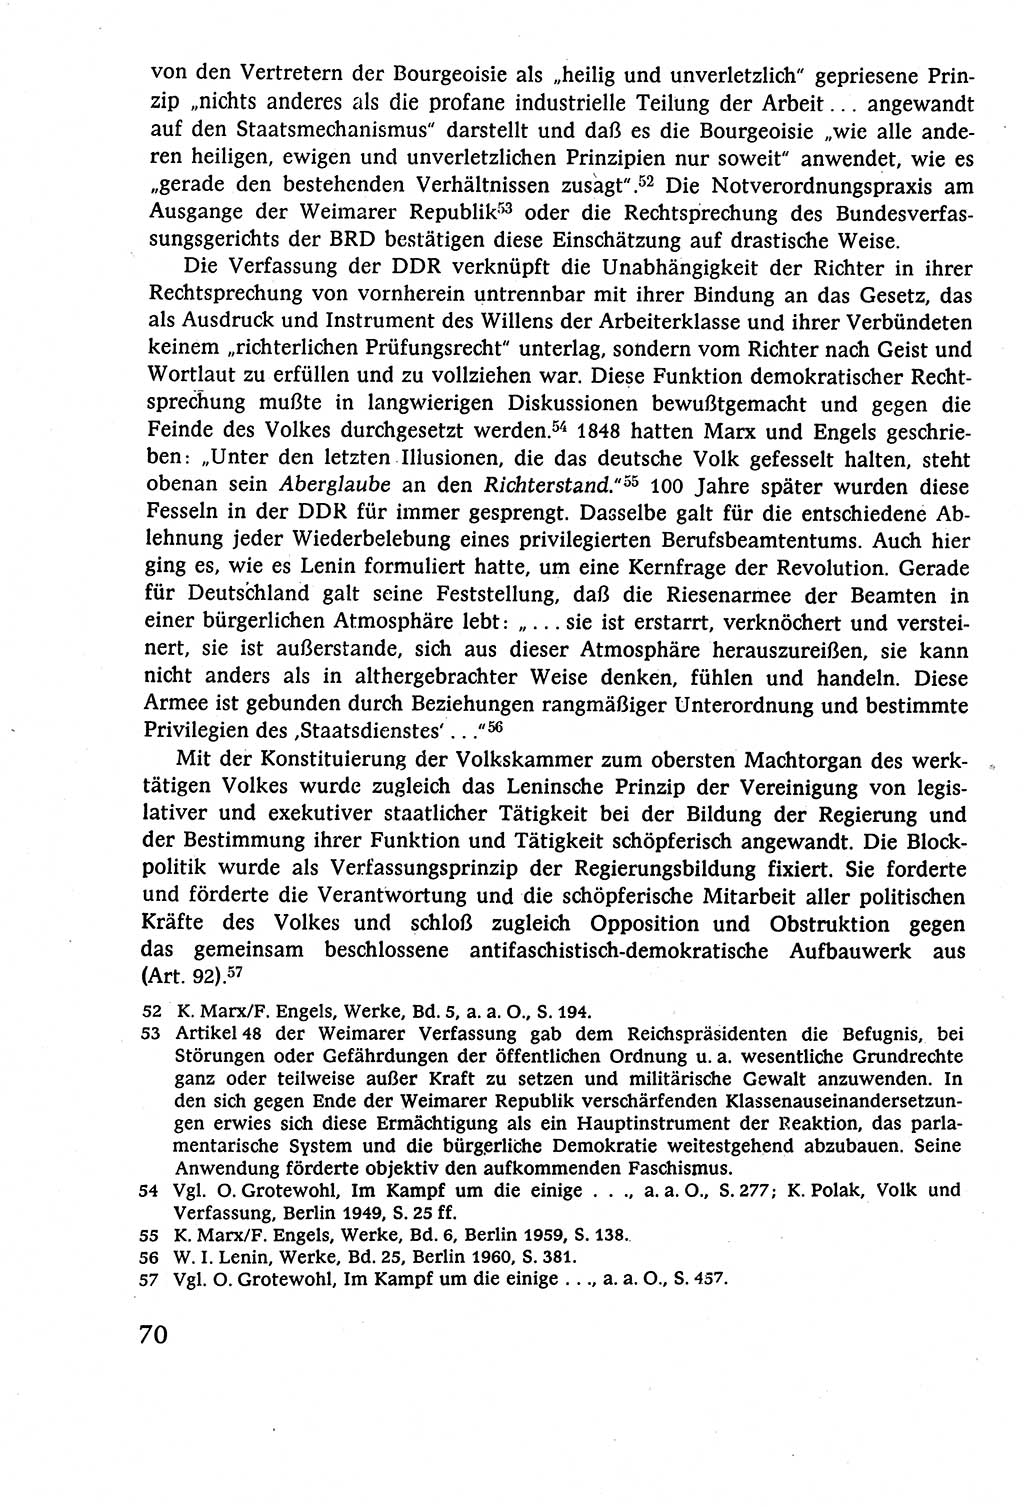 Staatsrecht der DDR (Deutsche Demokratische Republik), Lehrbuch 1977, Seite 70 (St.-R. DDR Lb. 1977, S. 70)